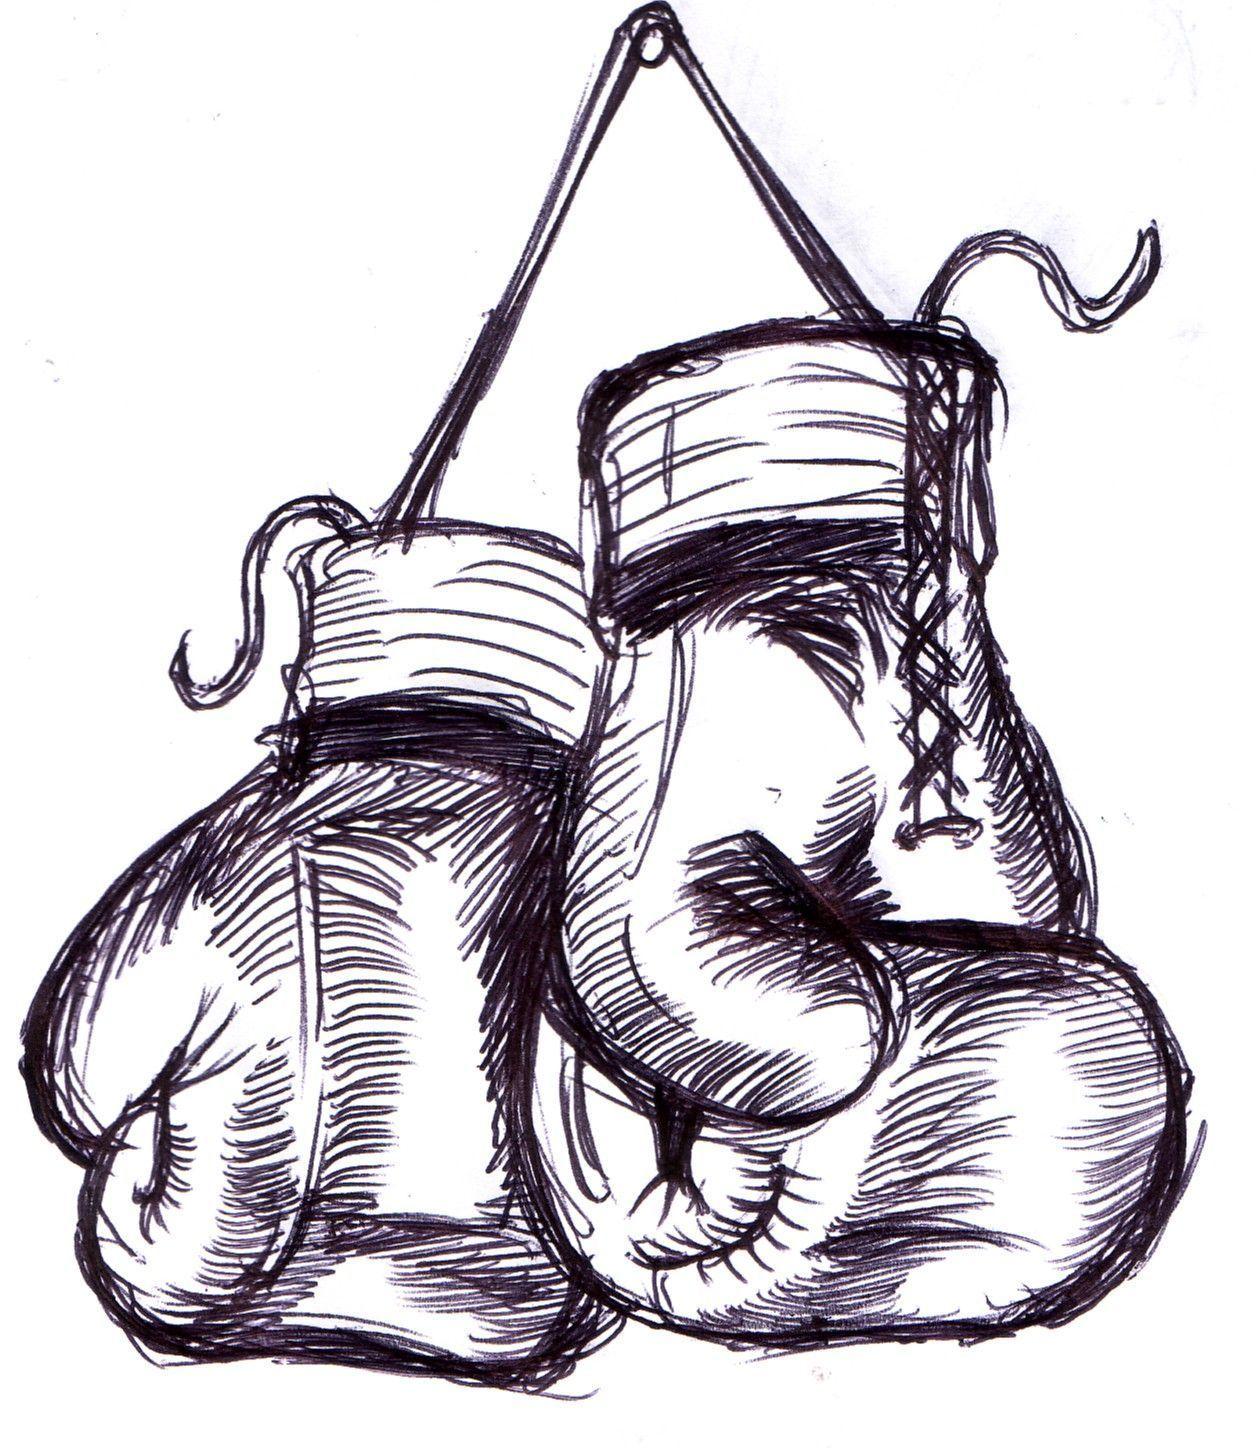 Everlast Boxing Gloves Wallpaper. Art Wallpaper